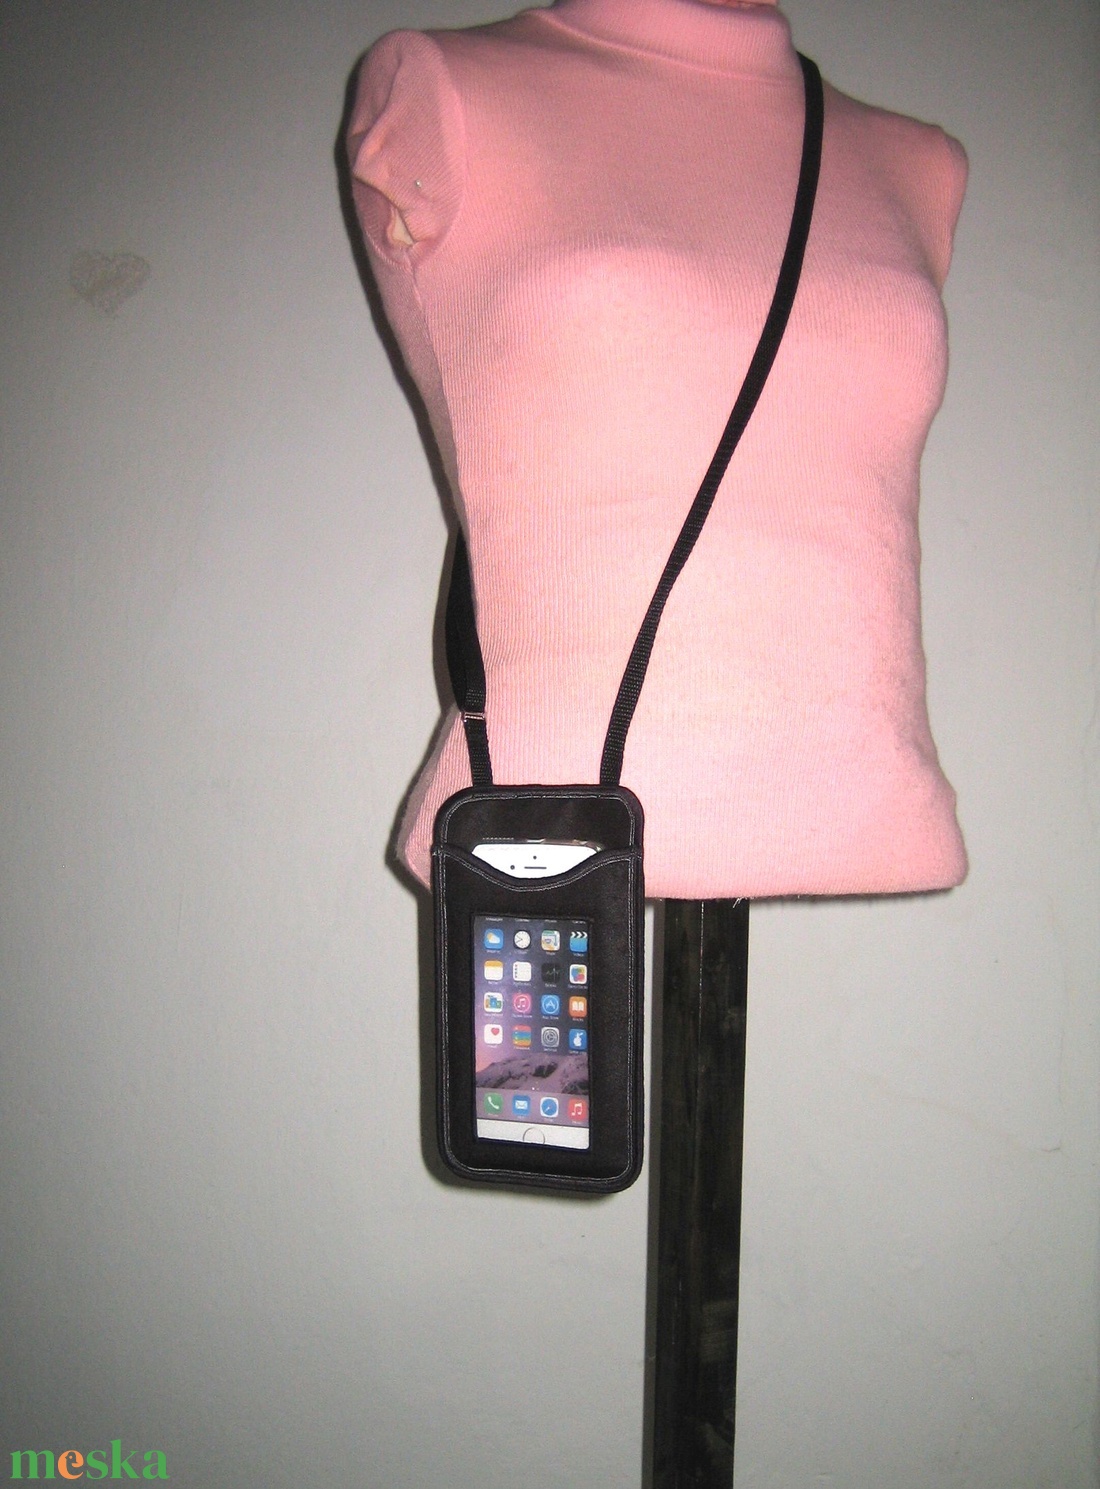 Telefontok állítható pántos kistáska  Fekete bőrhatású - táska & tok - pénztárca & más tok - telefontok - Meska.hu